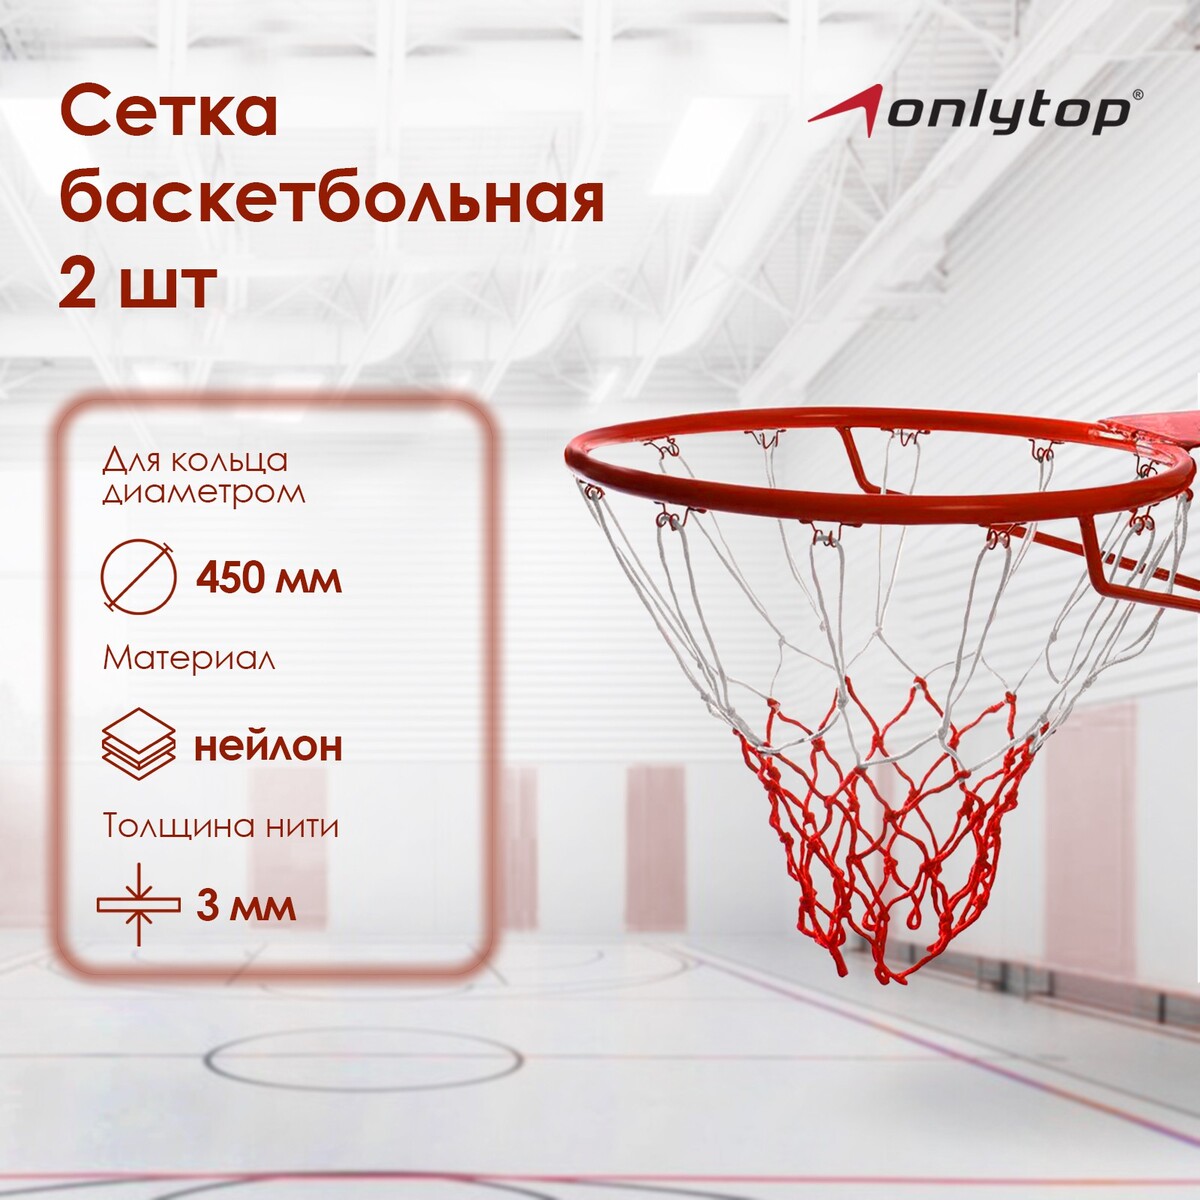 Сетка баскетбольная onlytop, 50 см, нить 3 мм, 2 шт. сетка баскетбольная zavodsporta d3 0 мм белый пп 1 шт